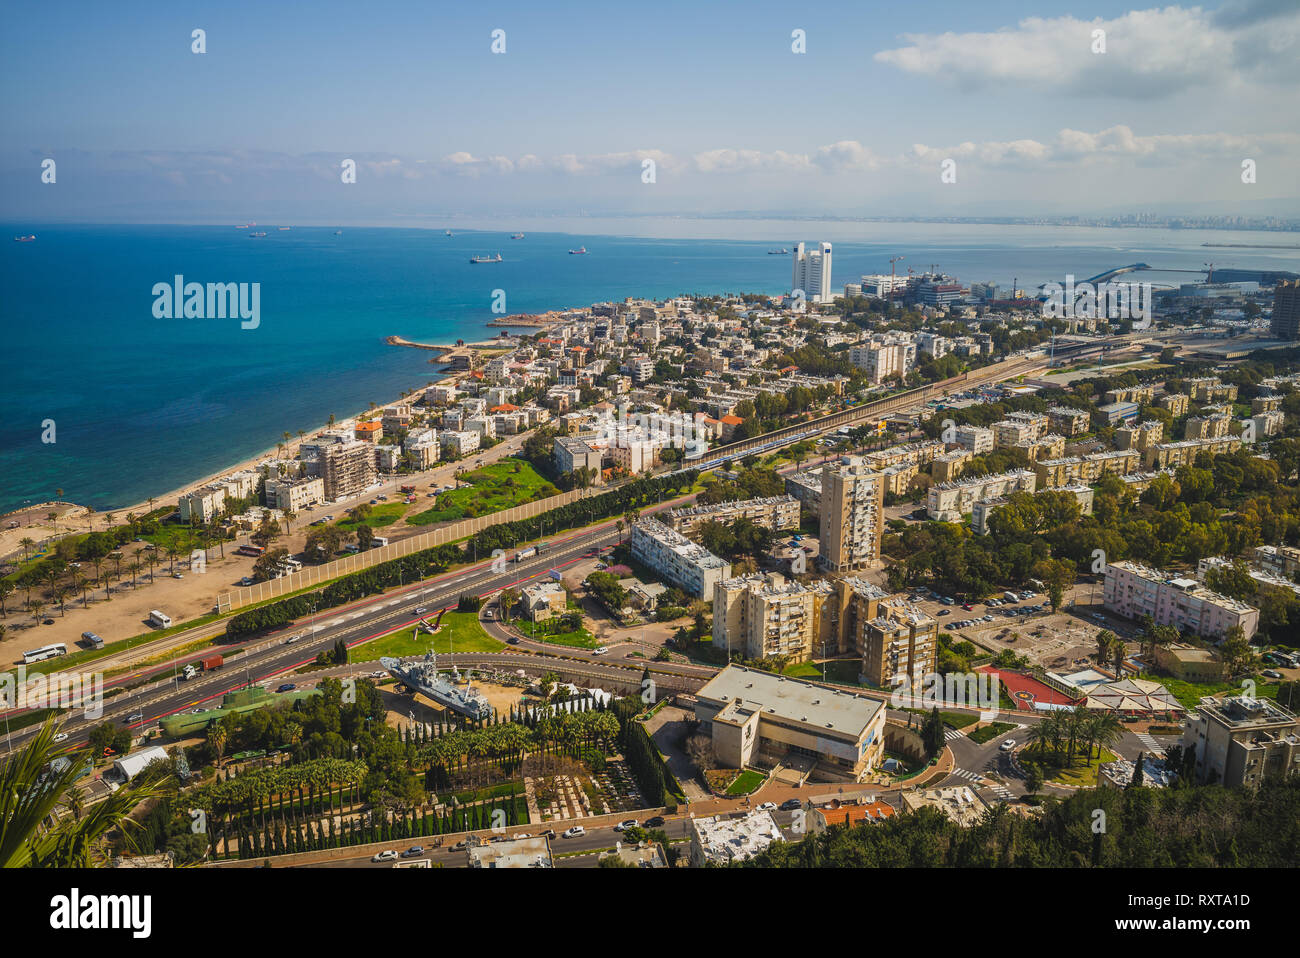 cityscape of haifa, israel Stock Photo